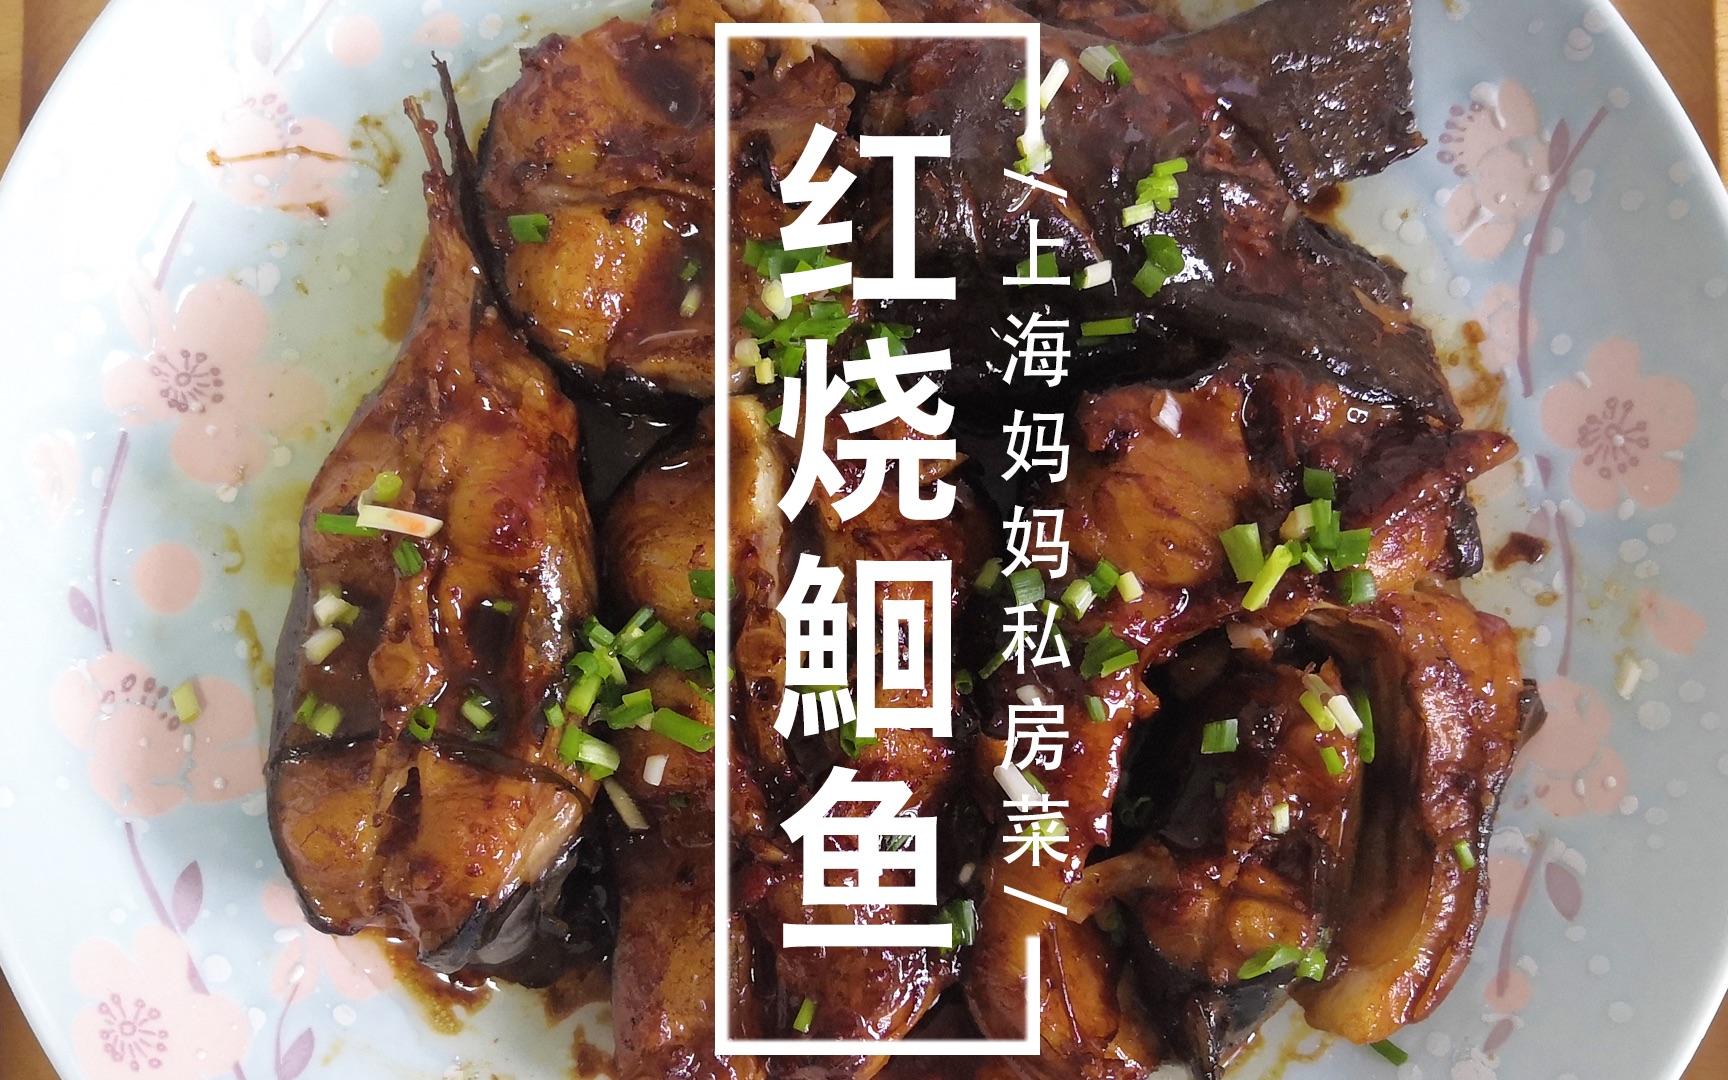 上海妈妈教你红烧鮰鱼家常做法,浓油赤酱,好吃入味还不腻!